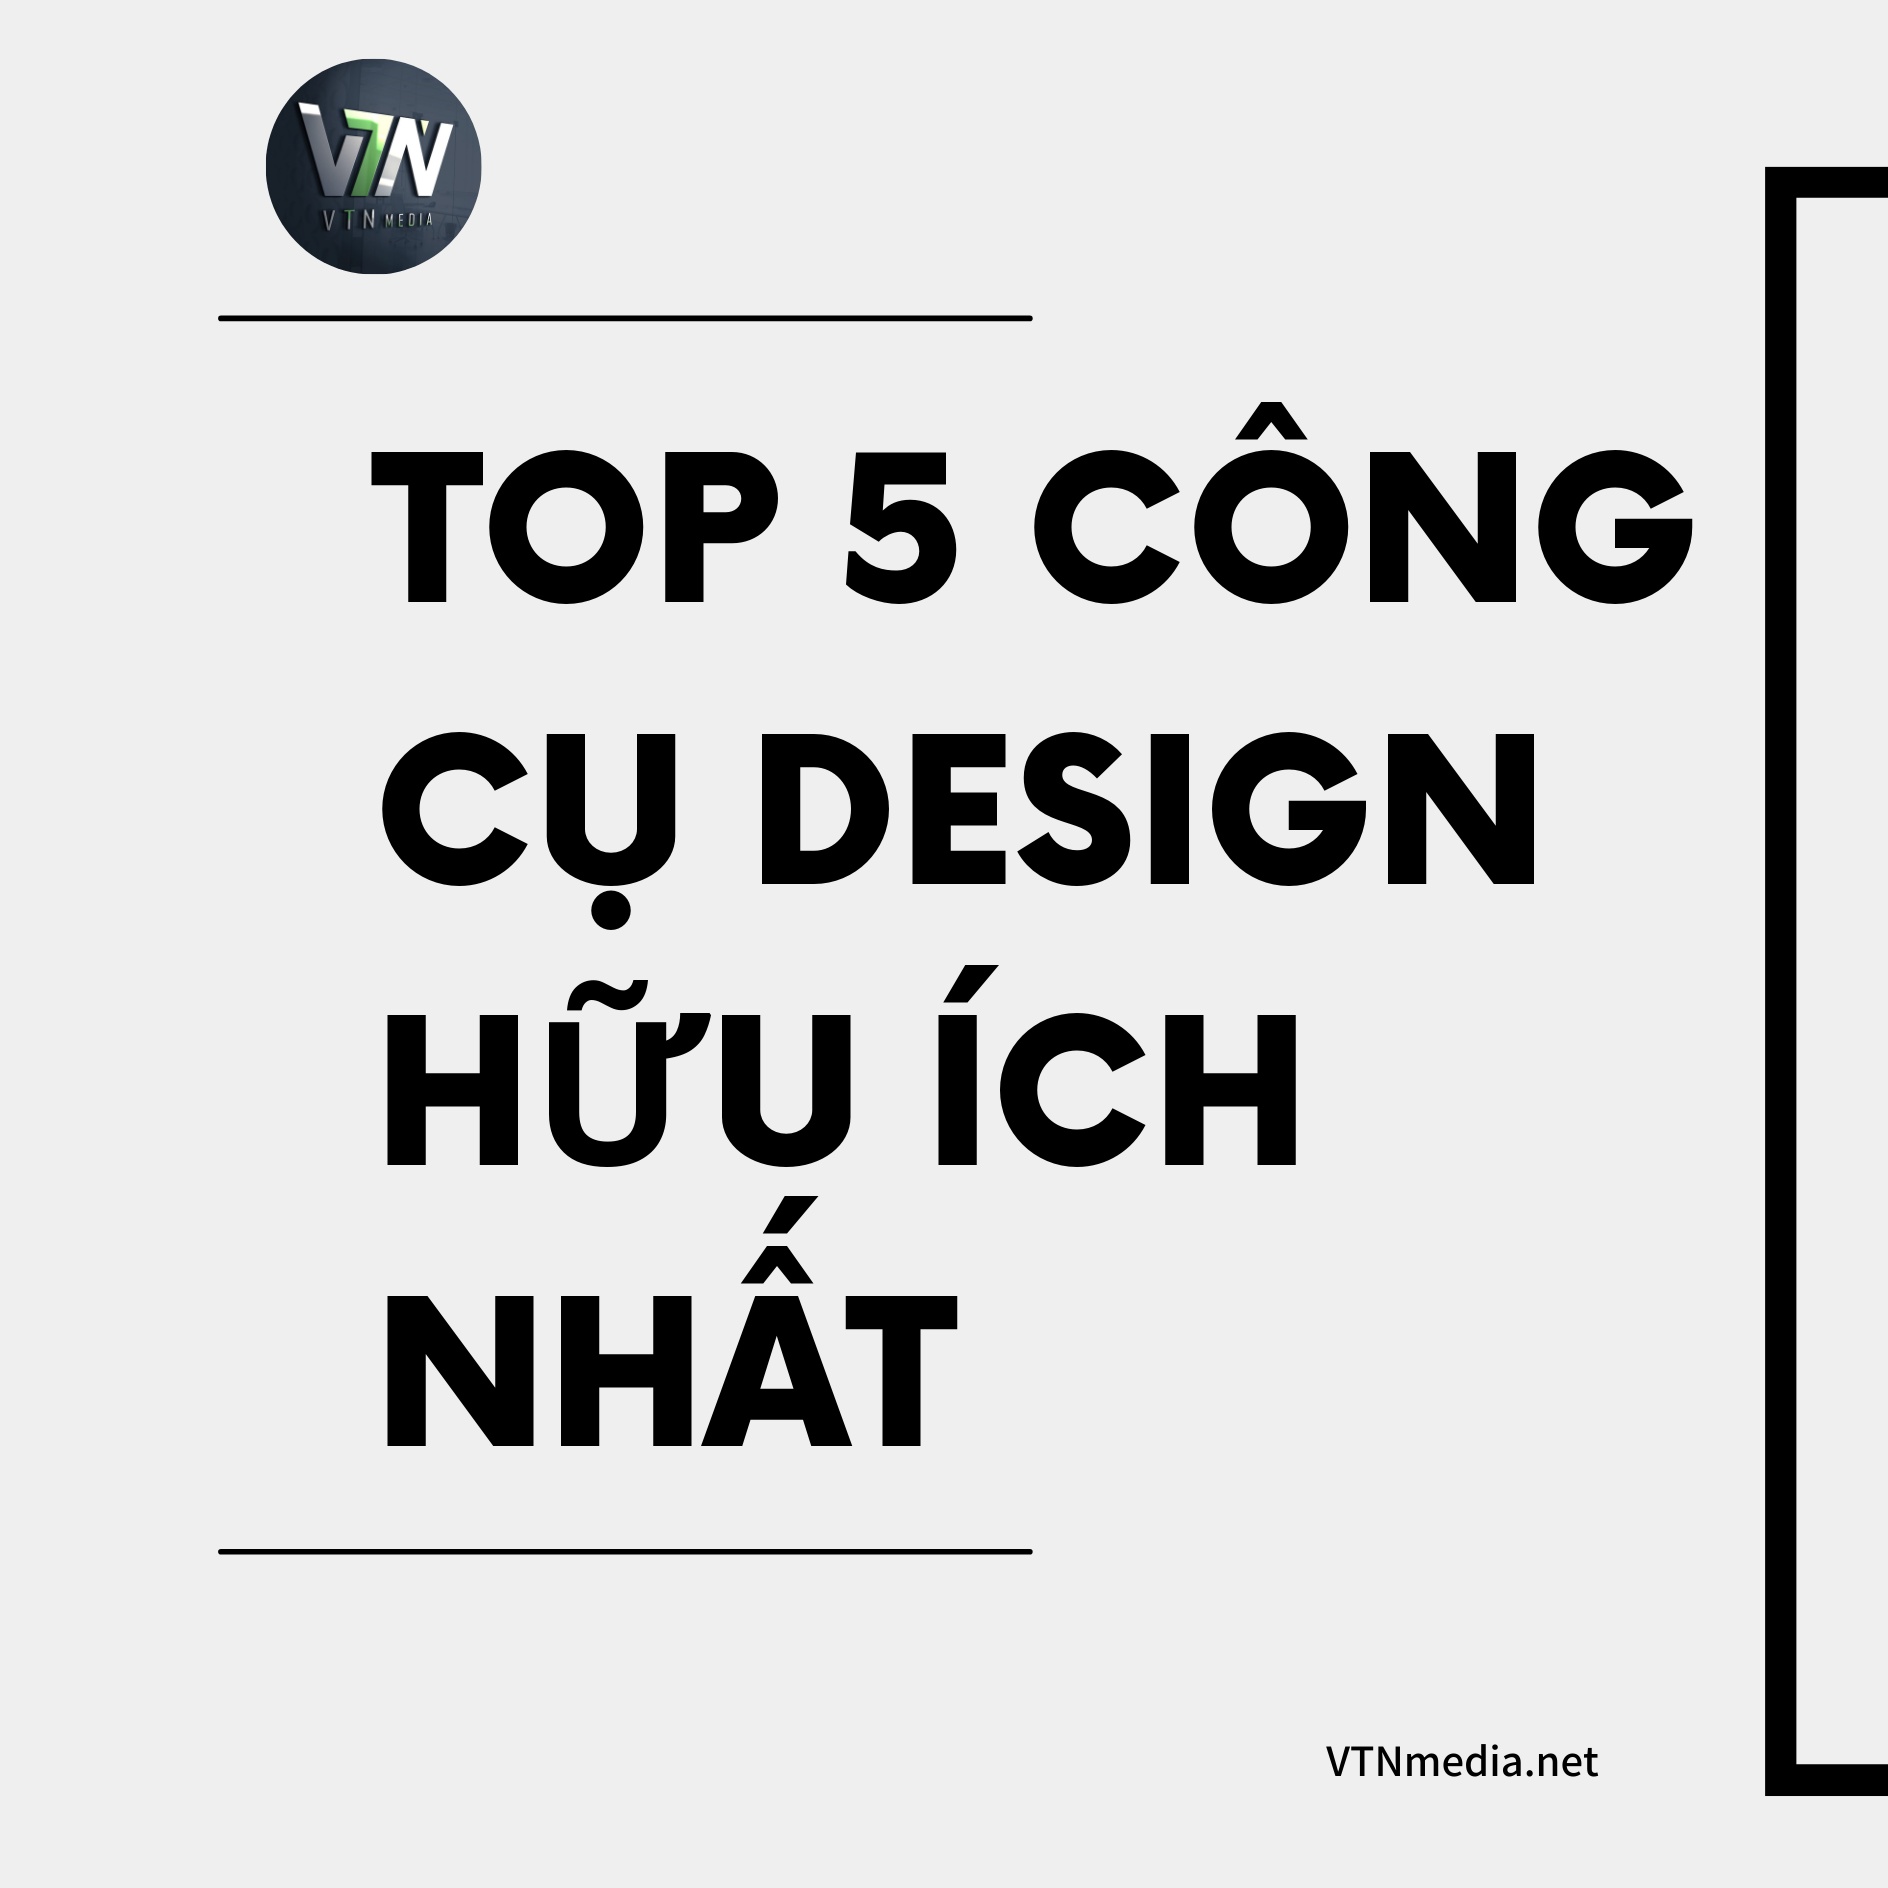 Top-5-cong-cu-design-huu-ich-nhat